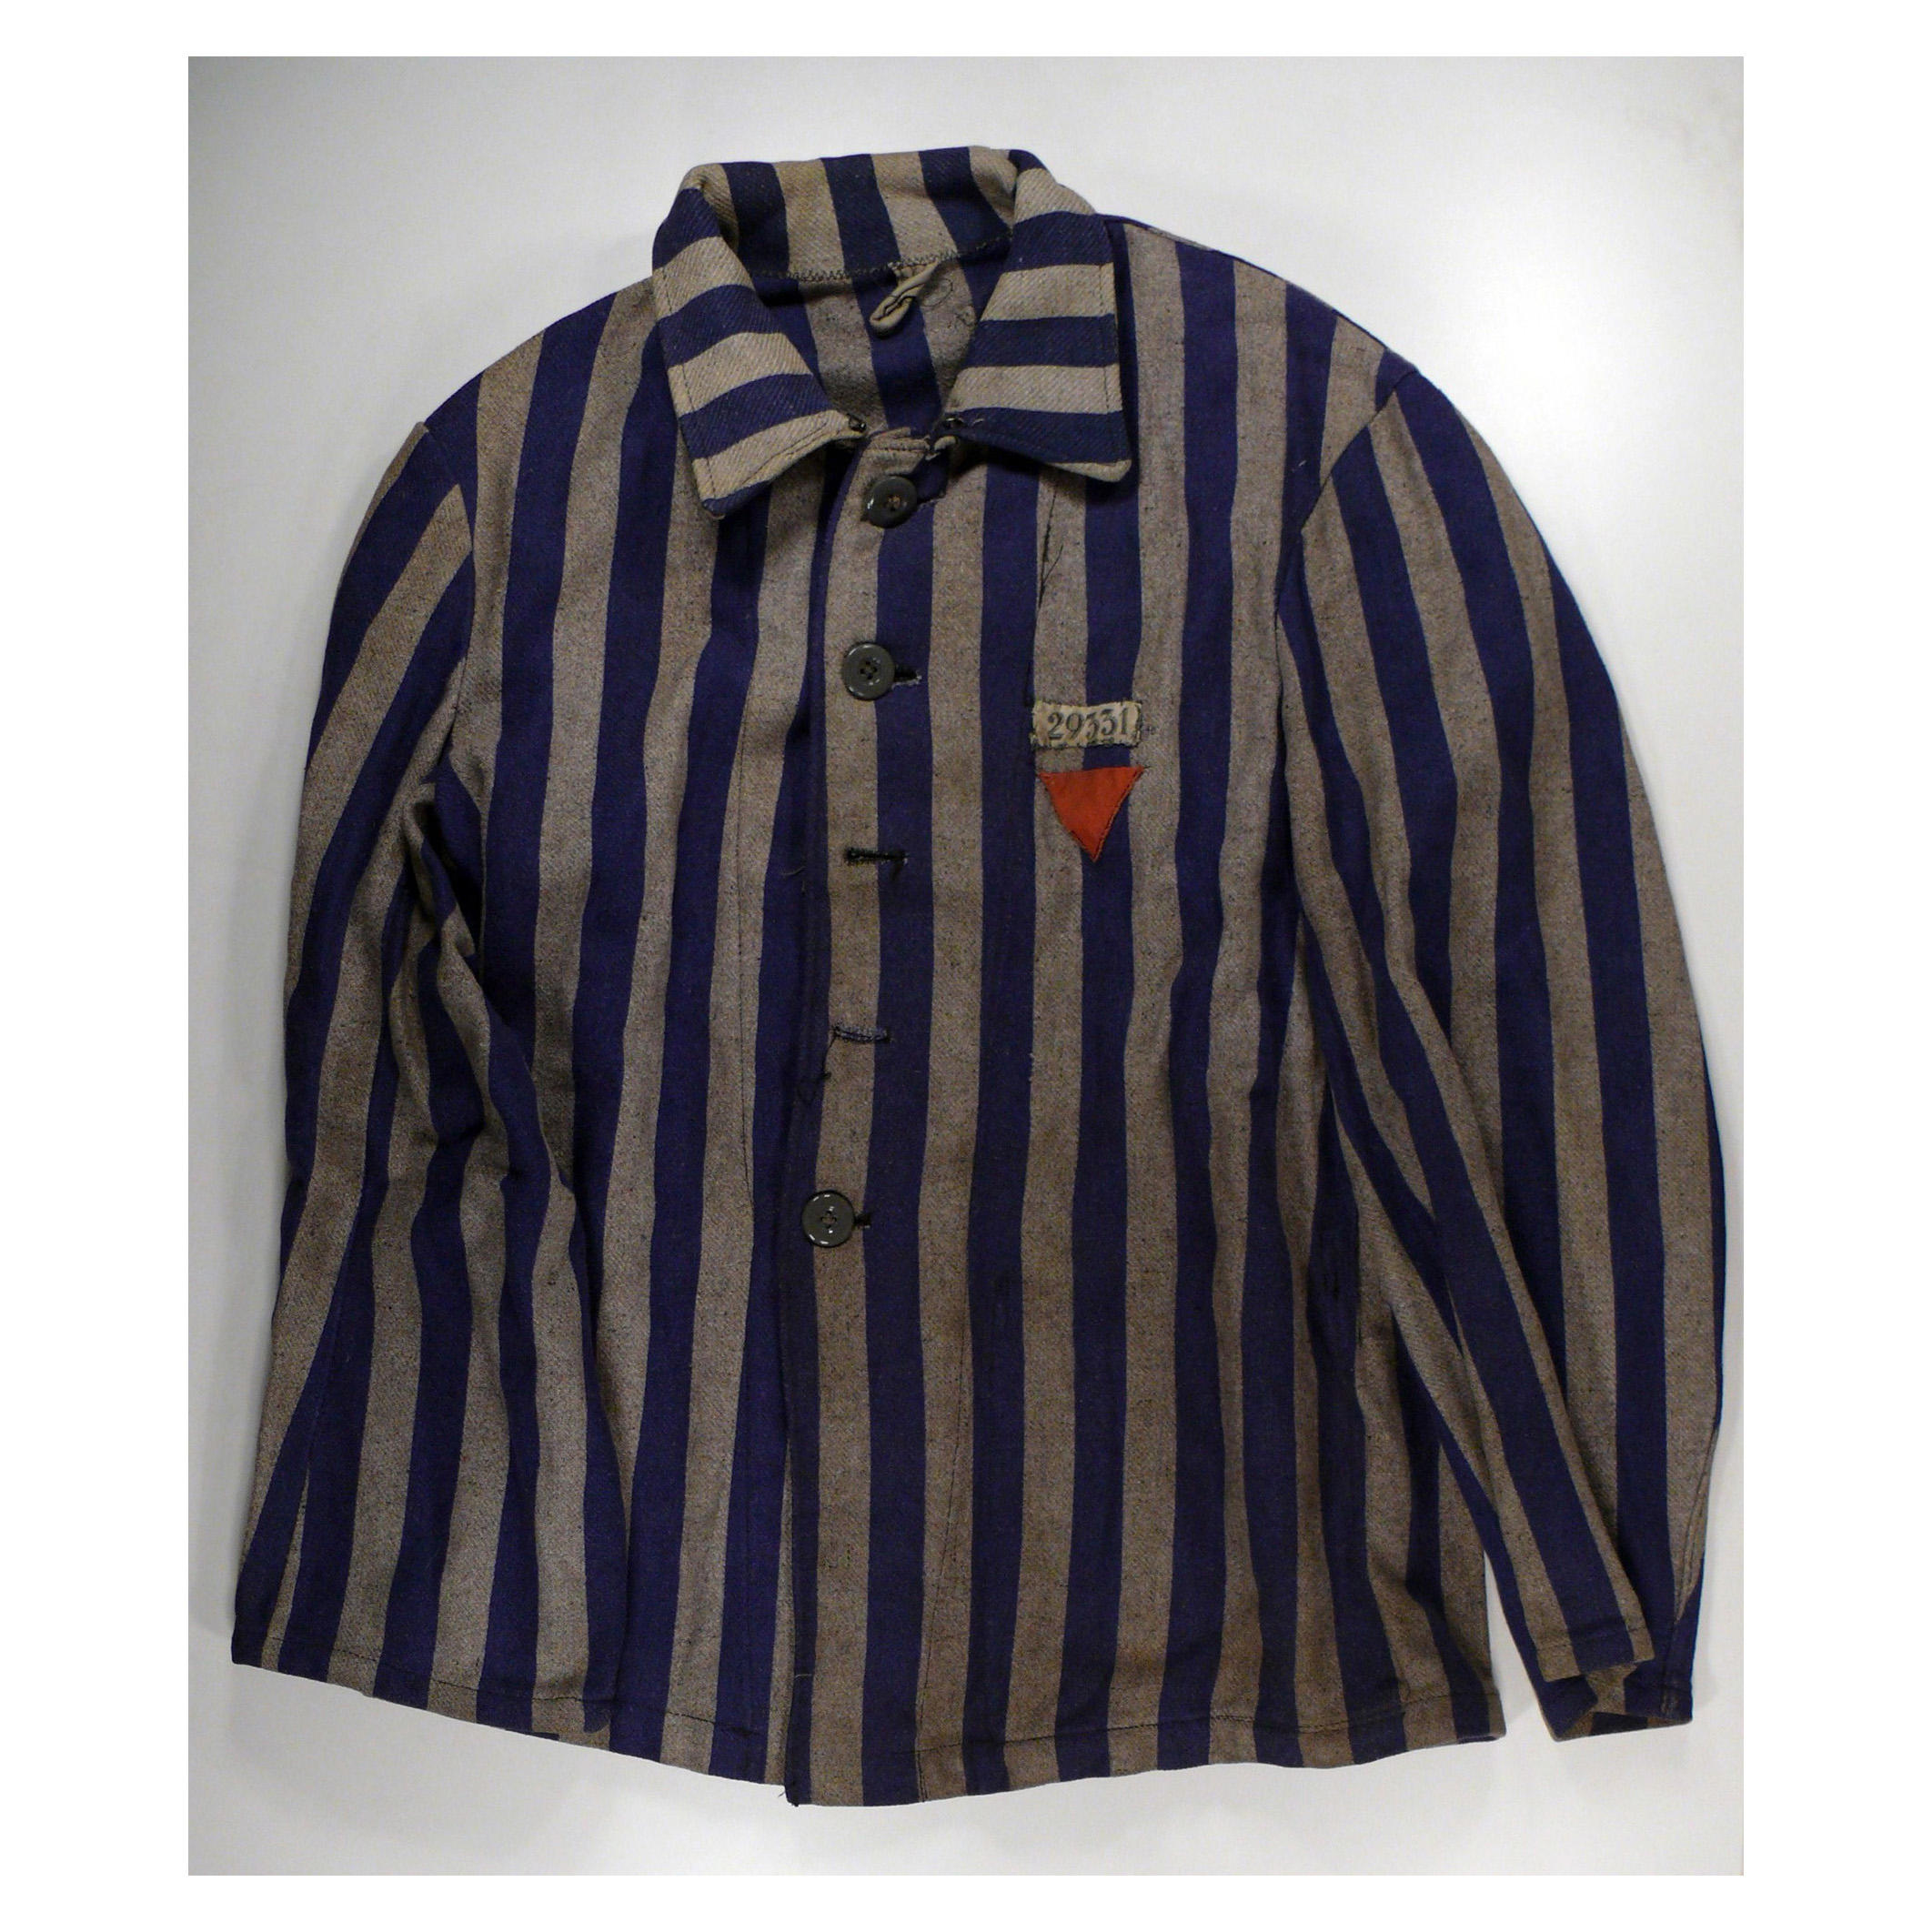 La chemise d’Albert Mülli à Dachau